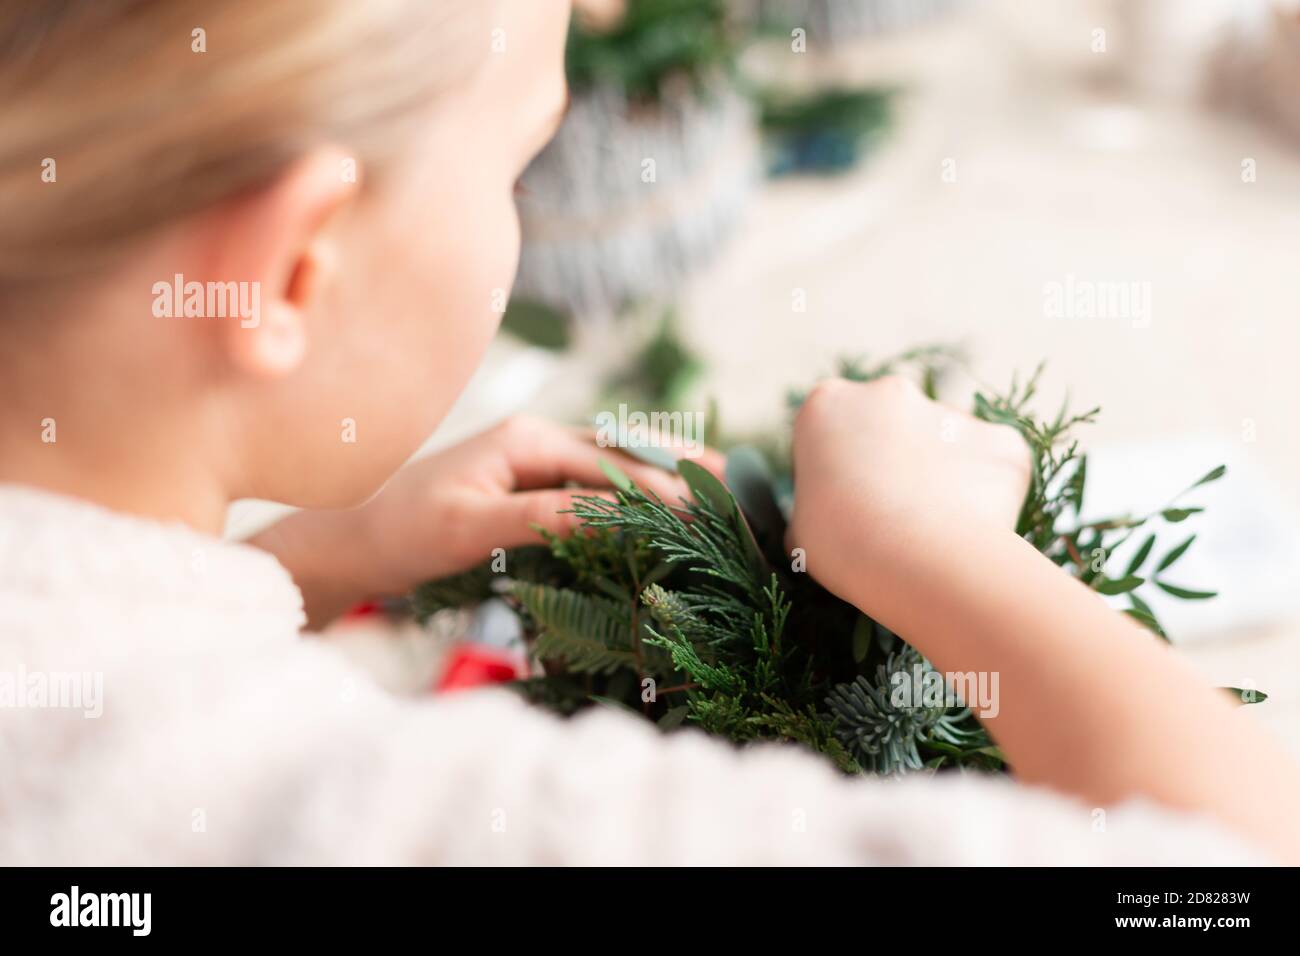 Creazione di arrangiamenti floreali natalizi con garofani, fiori di crisantemo santini e abete. Nozioni di base sul design floreale Foto Stock